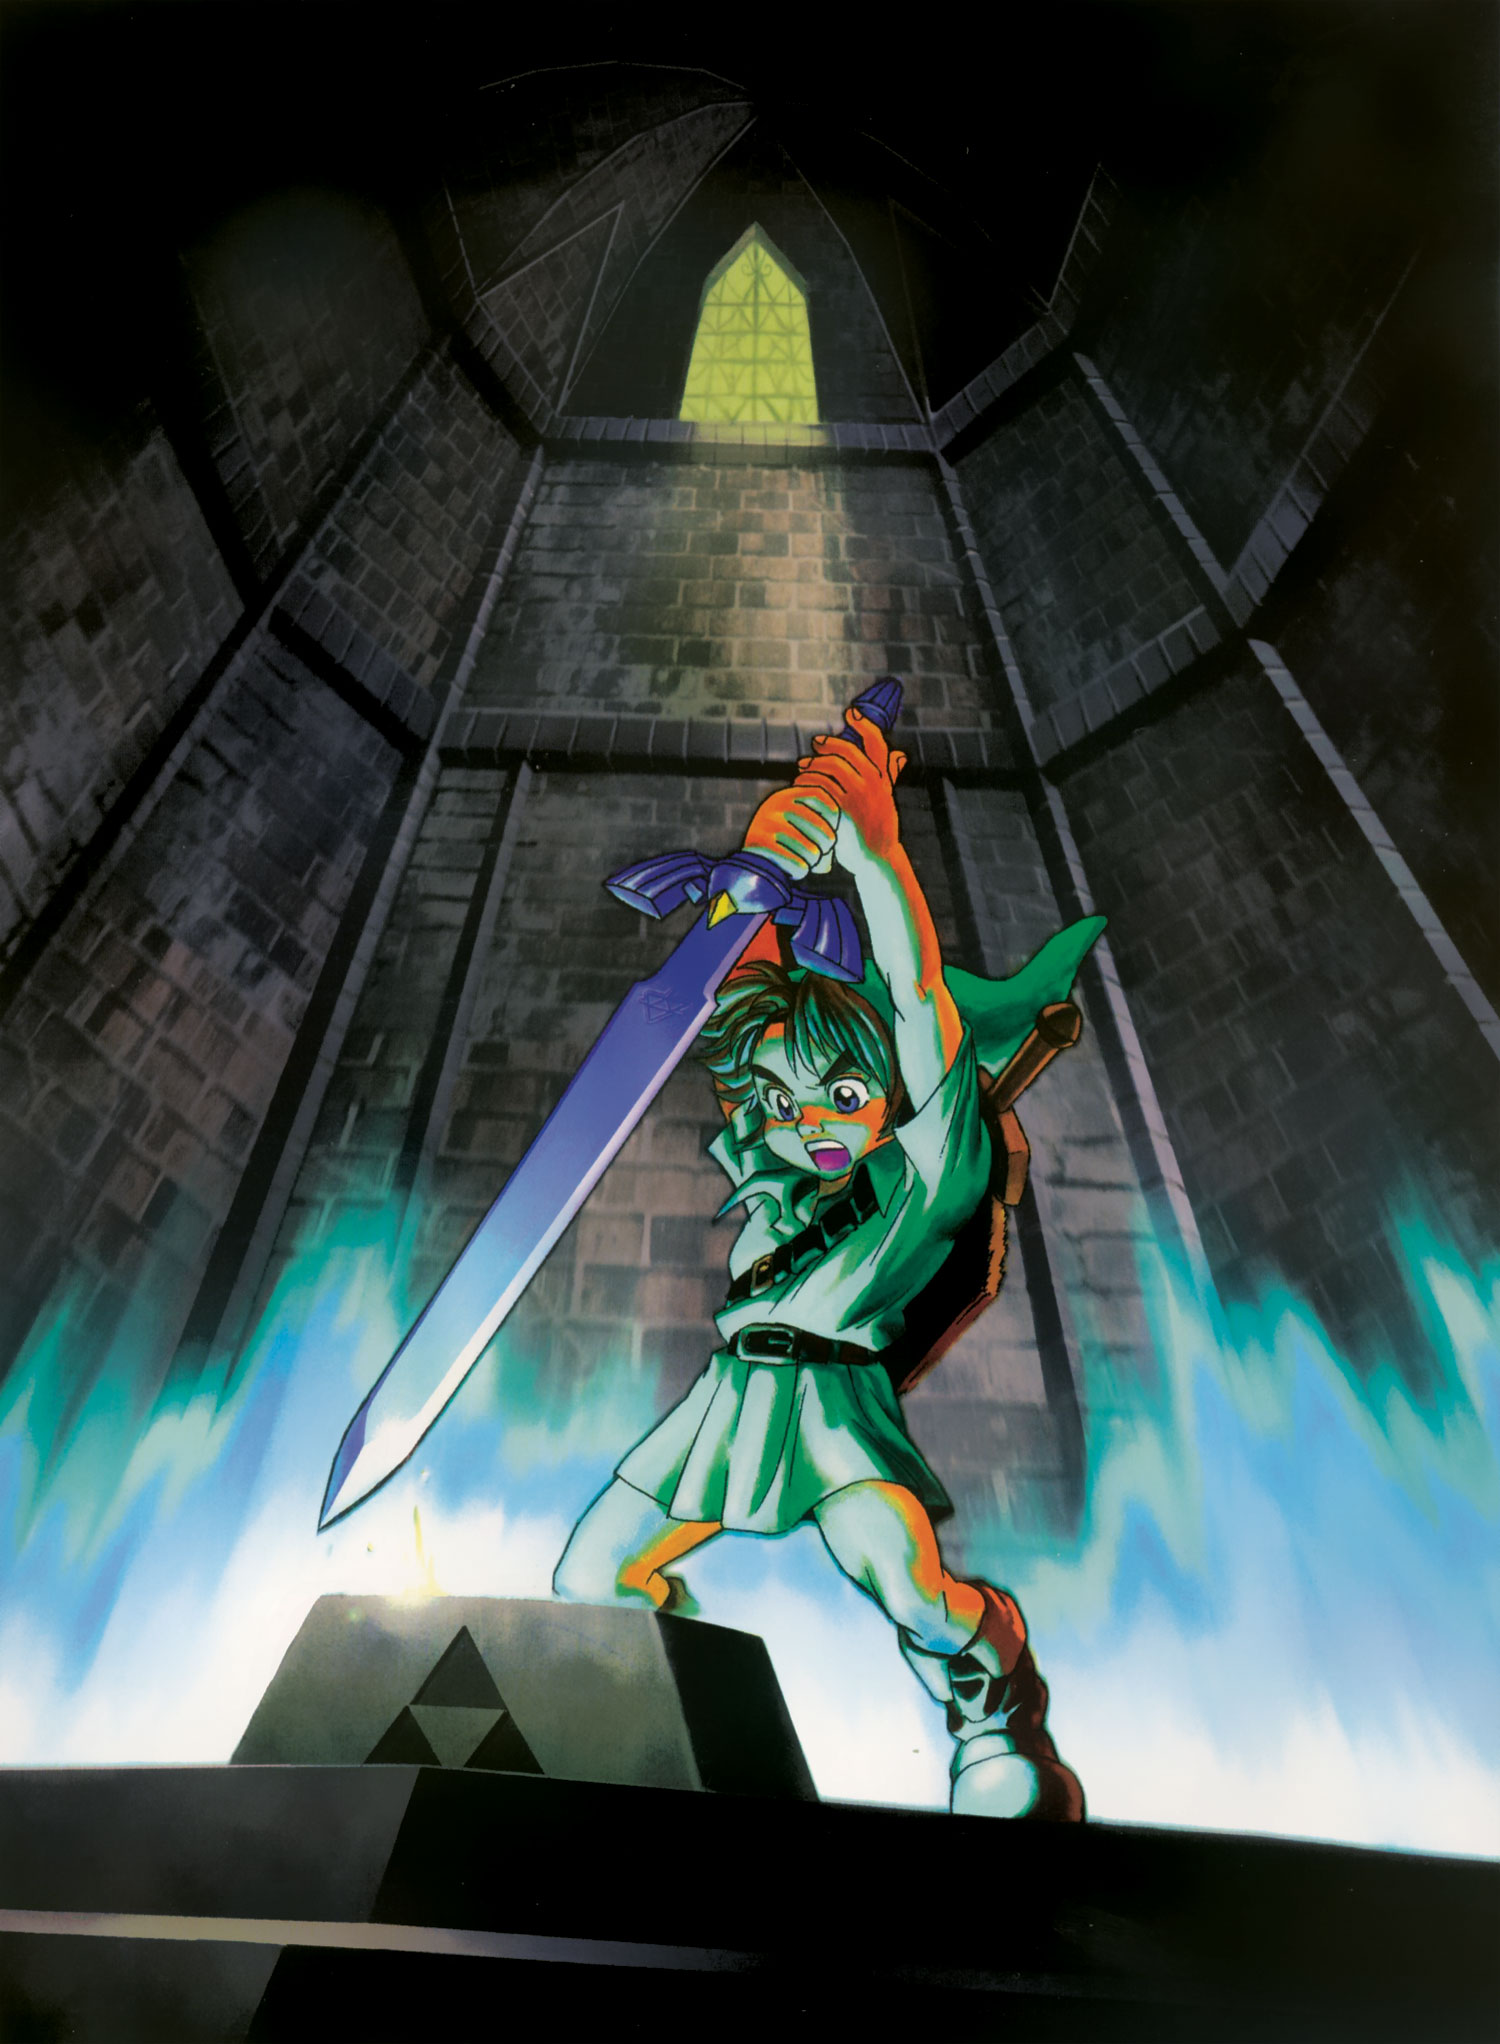 Livro Dos Segredos - The Legend of Zelda - Ocarina of Time (N64) PDF